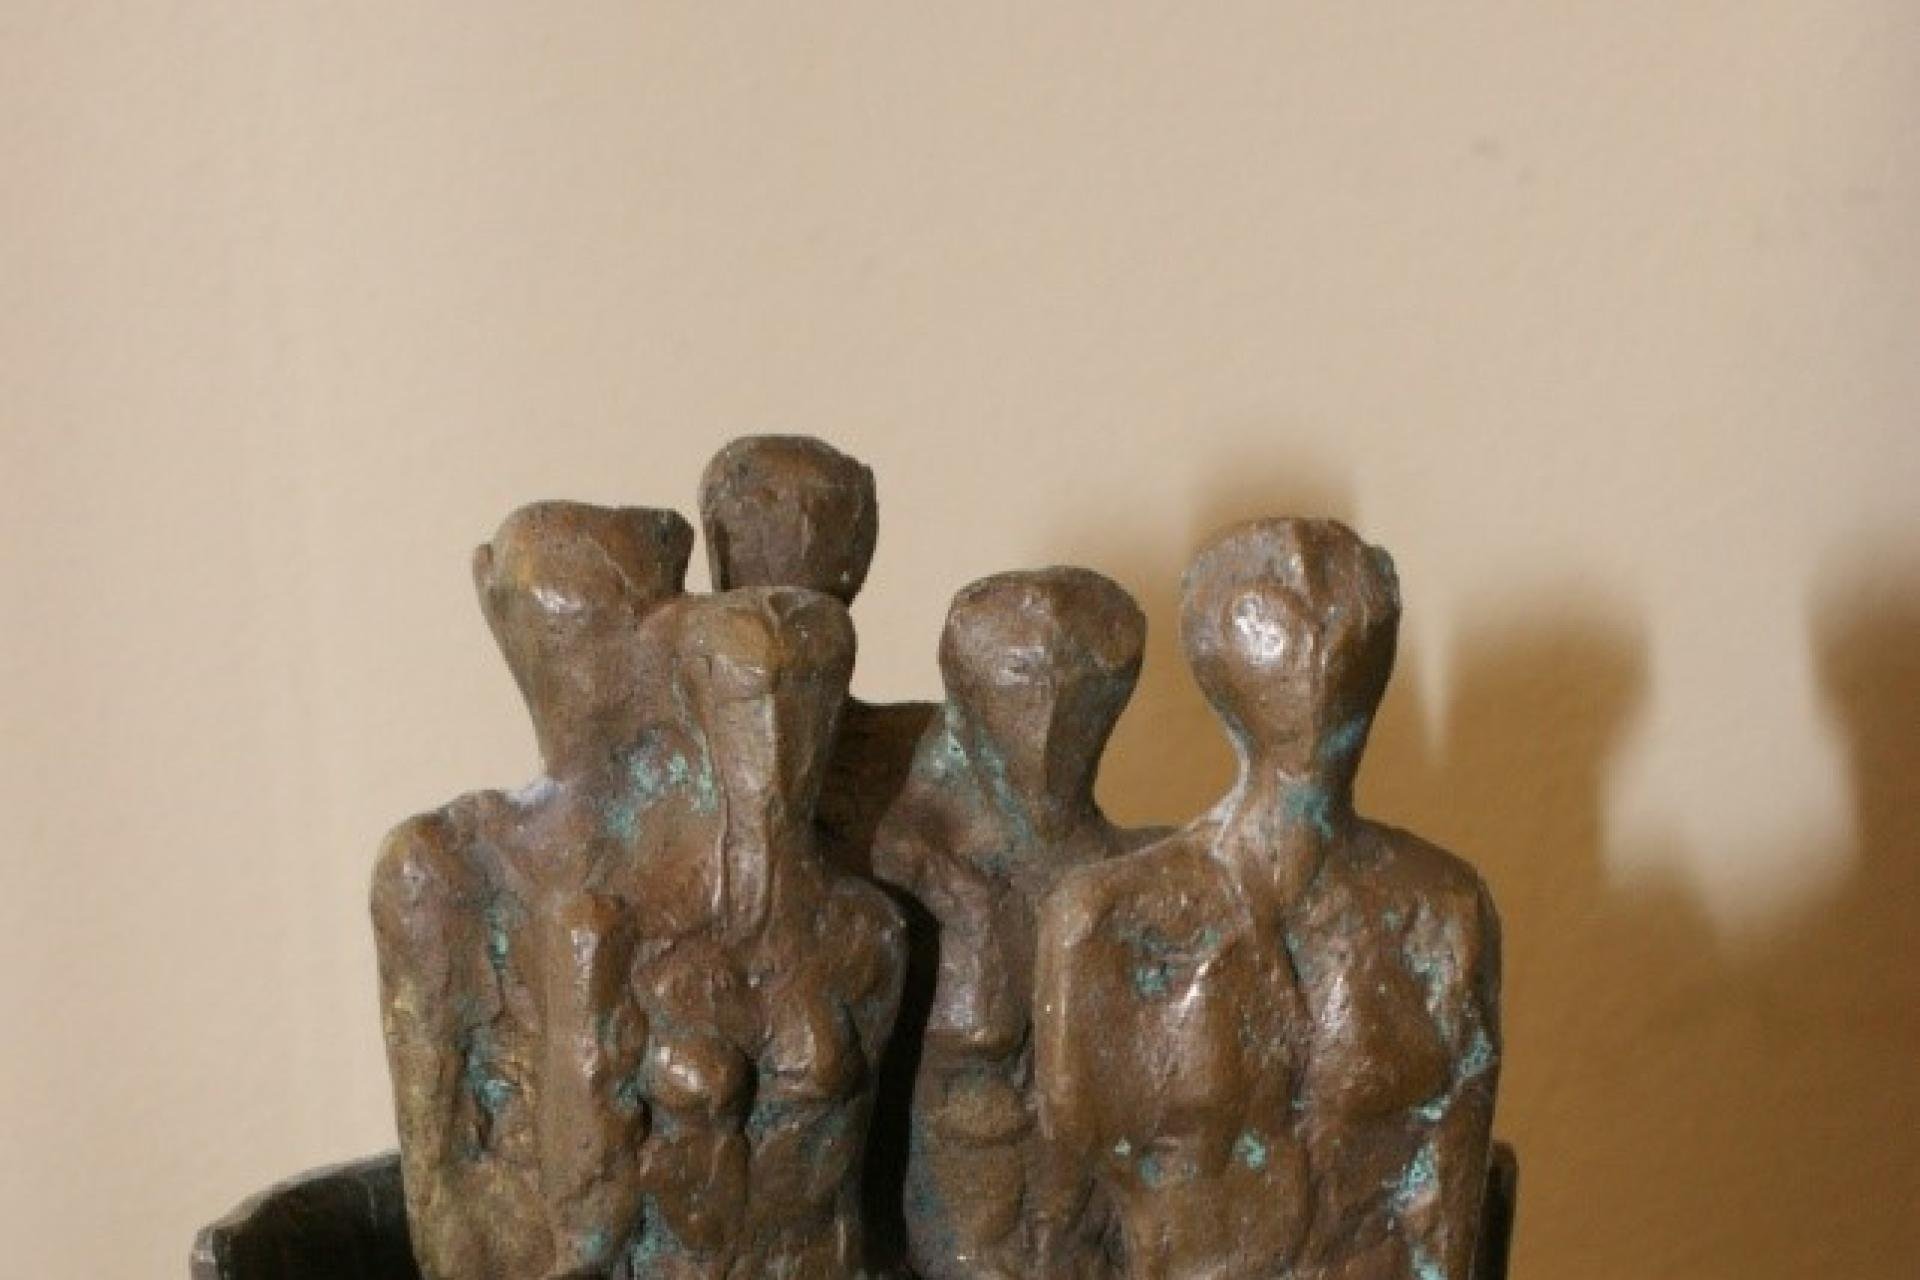 bronzen beeldje dat een groep van mensen voorstelt waarin één persoon naar voren staat